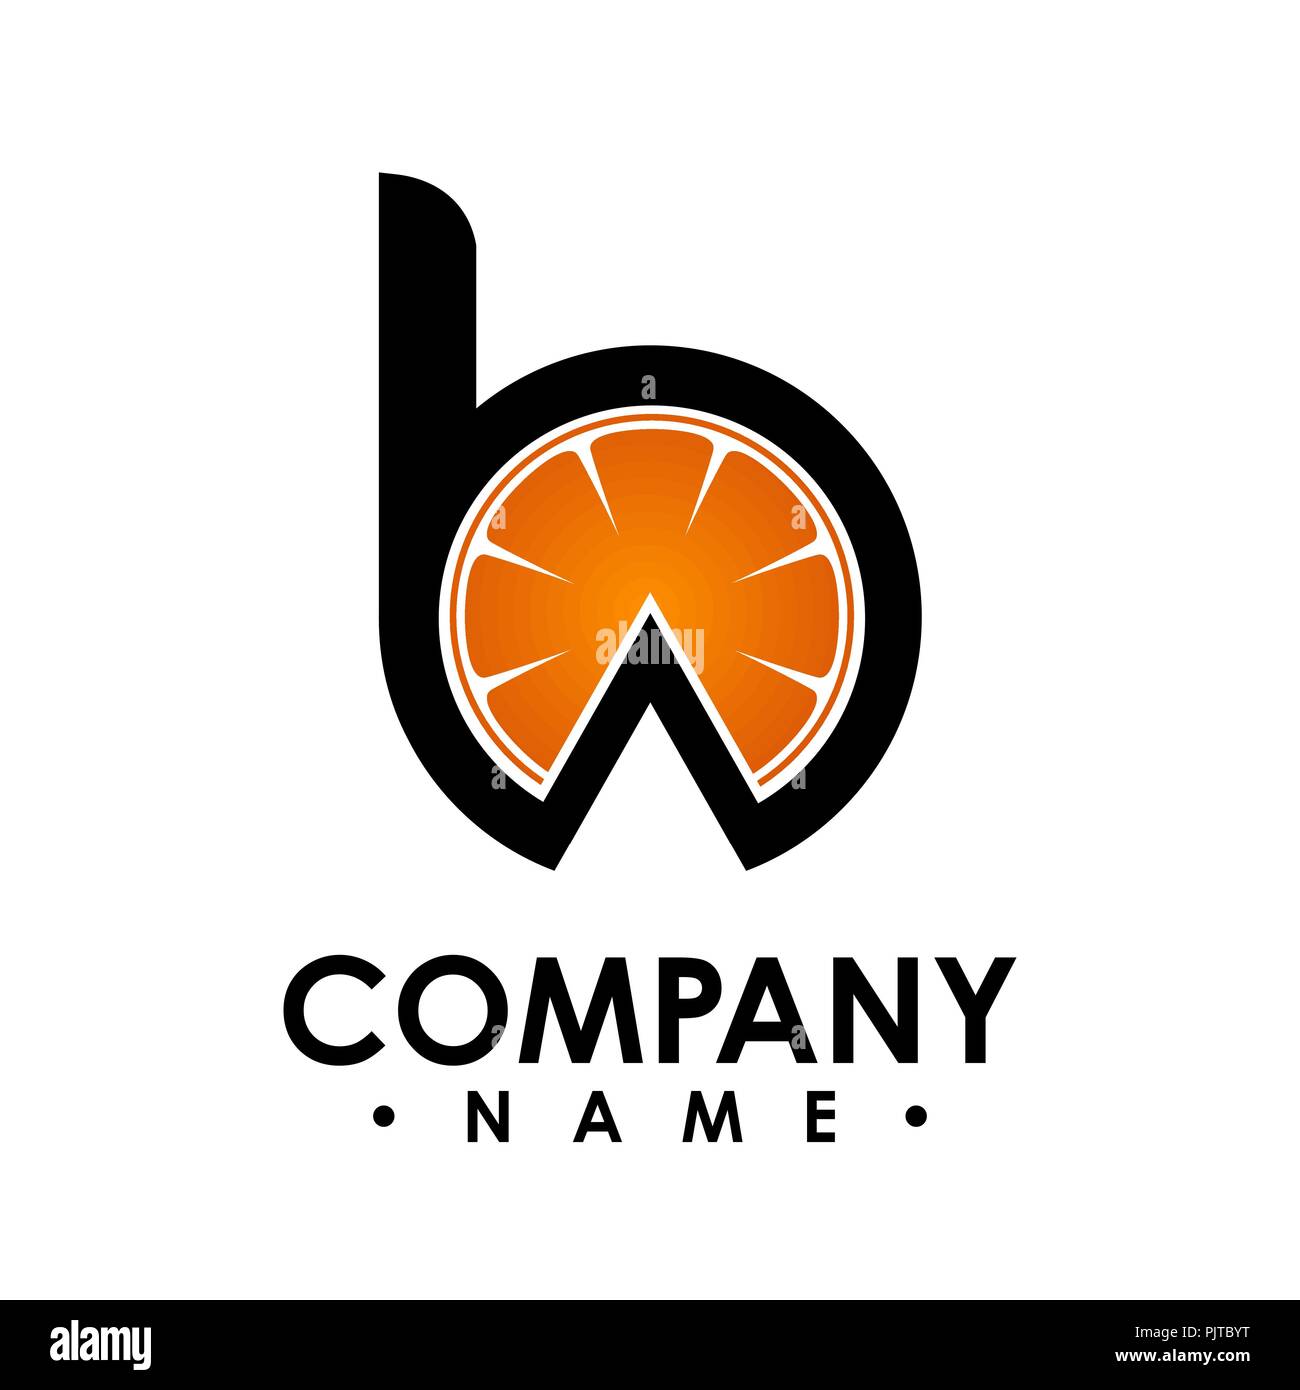 B letter logo design vector illustration logo set, B letter logo with orange shape inside vector, letter B logo vector, creative Letter B letter logo Stock Vector